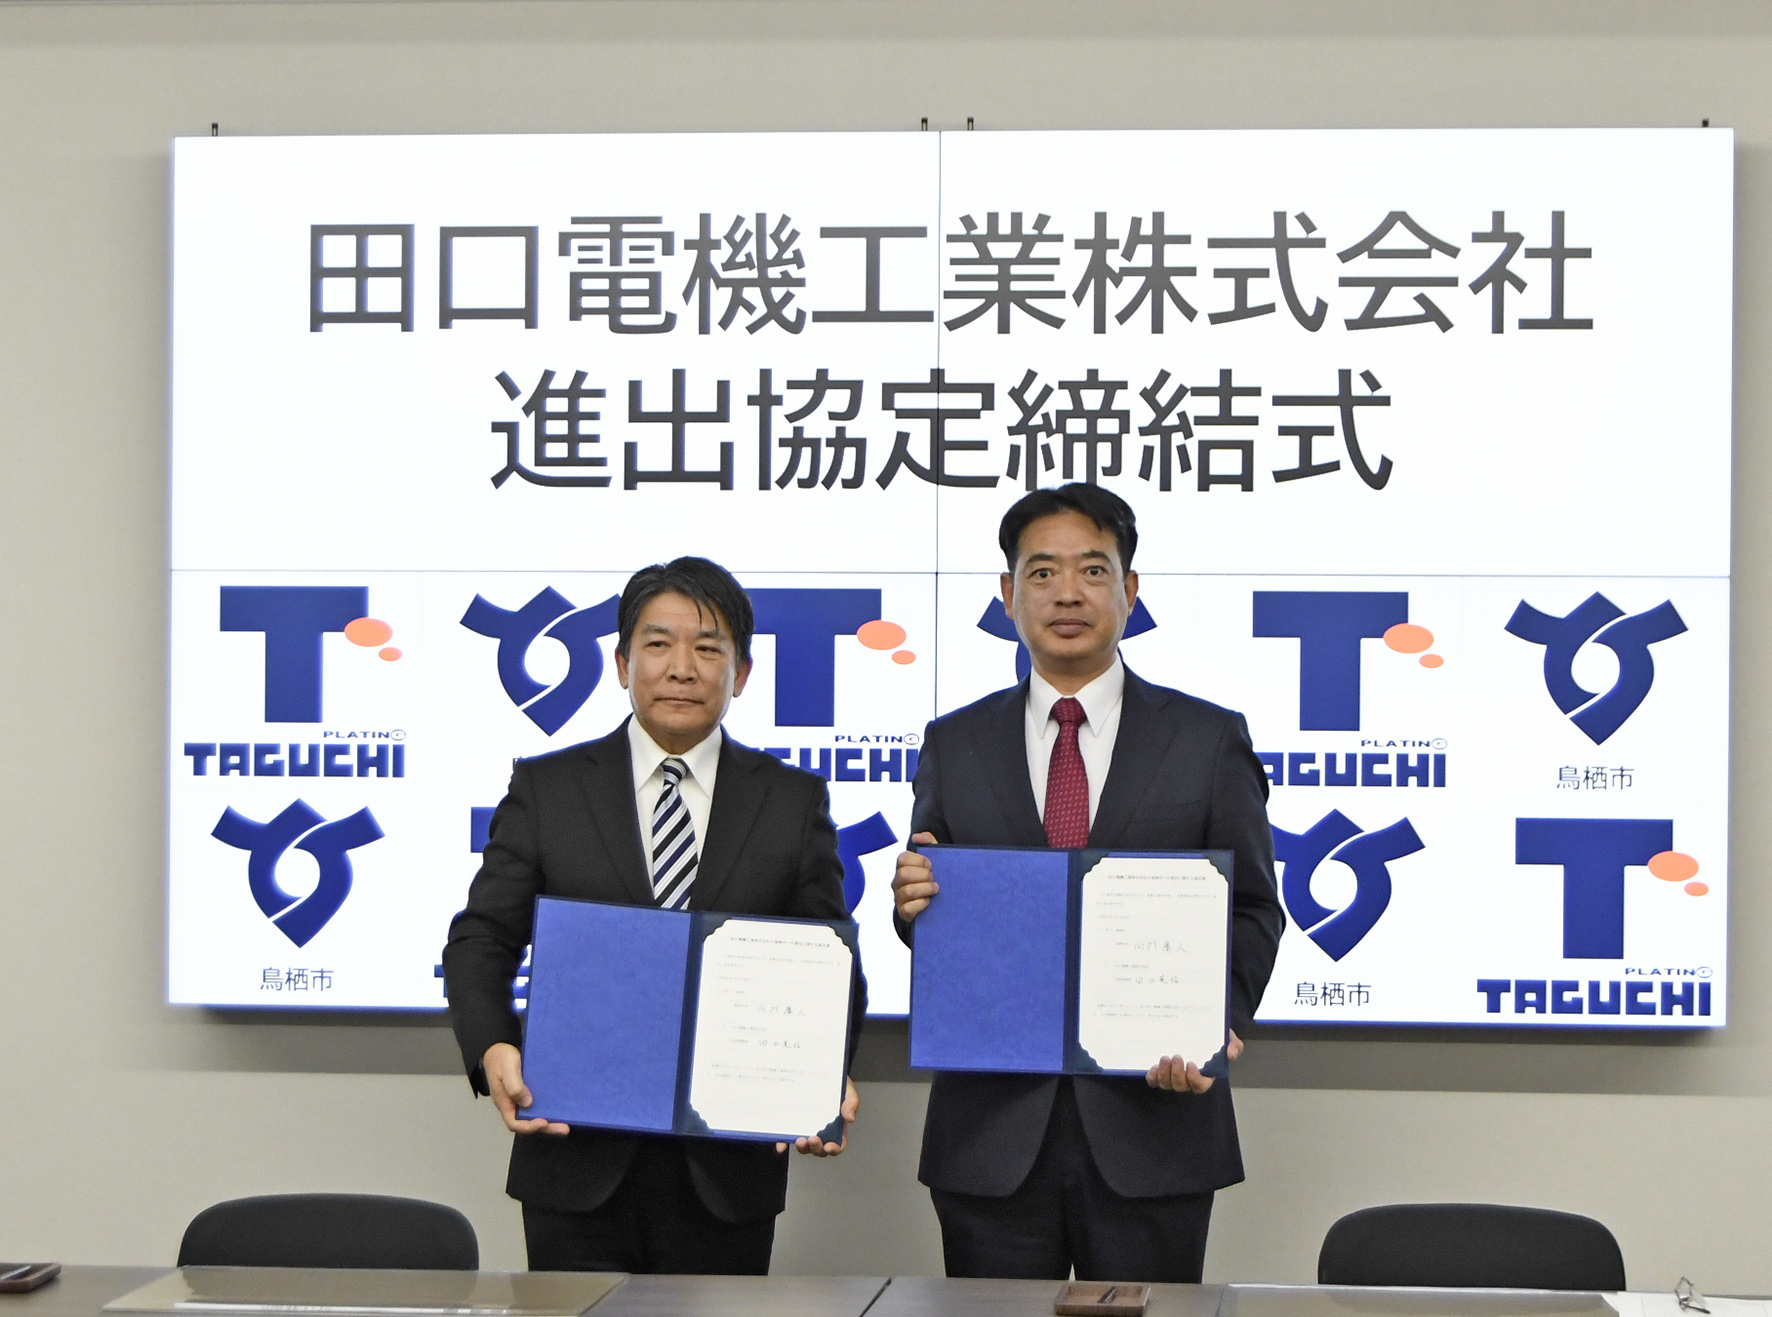 田口電機工業株式会社と鳥栖市が進出協定を締結されました